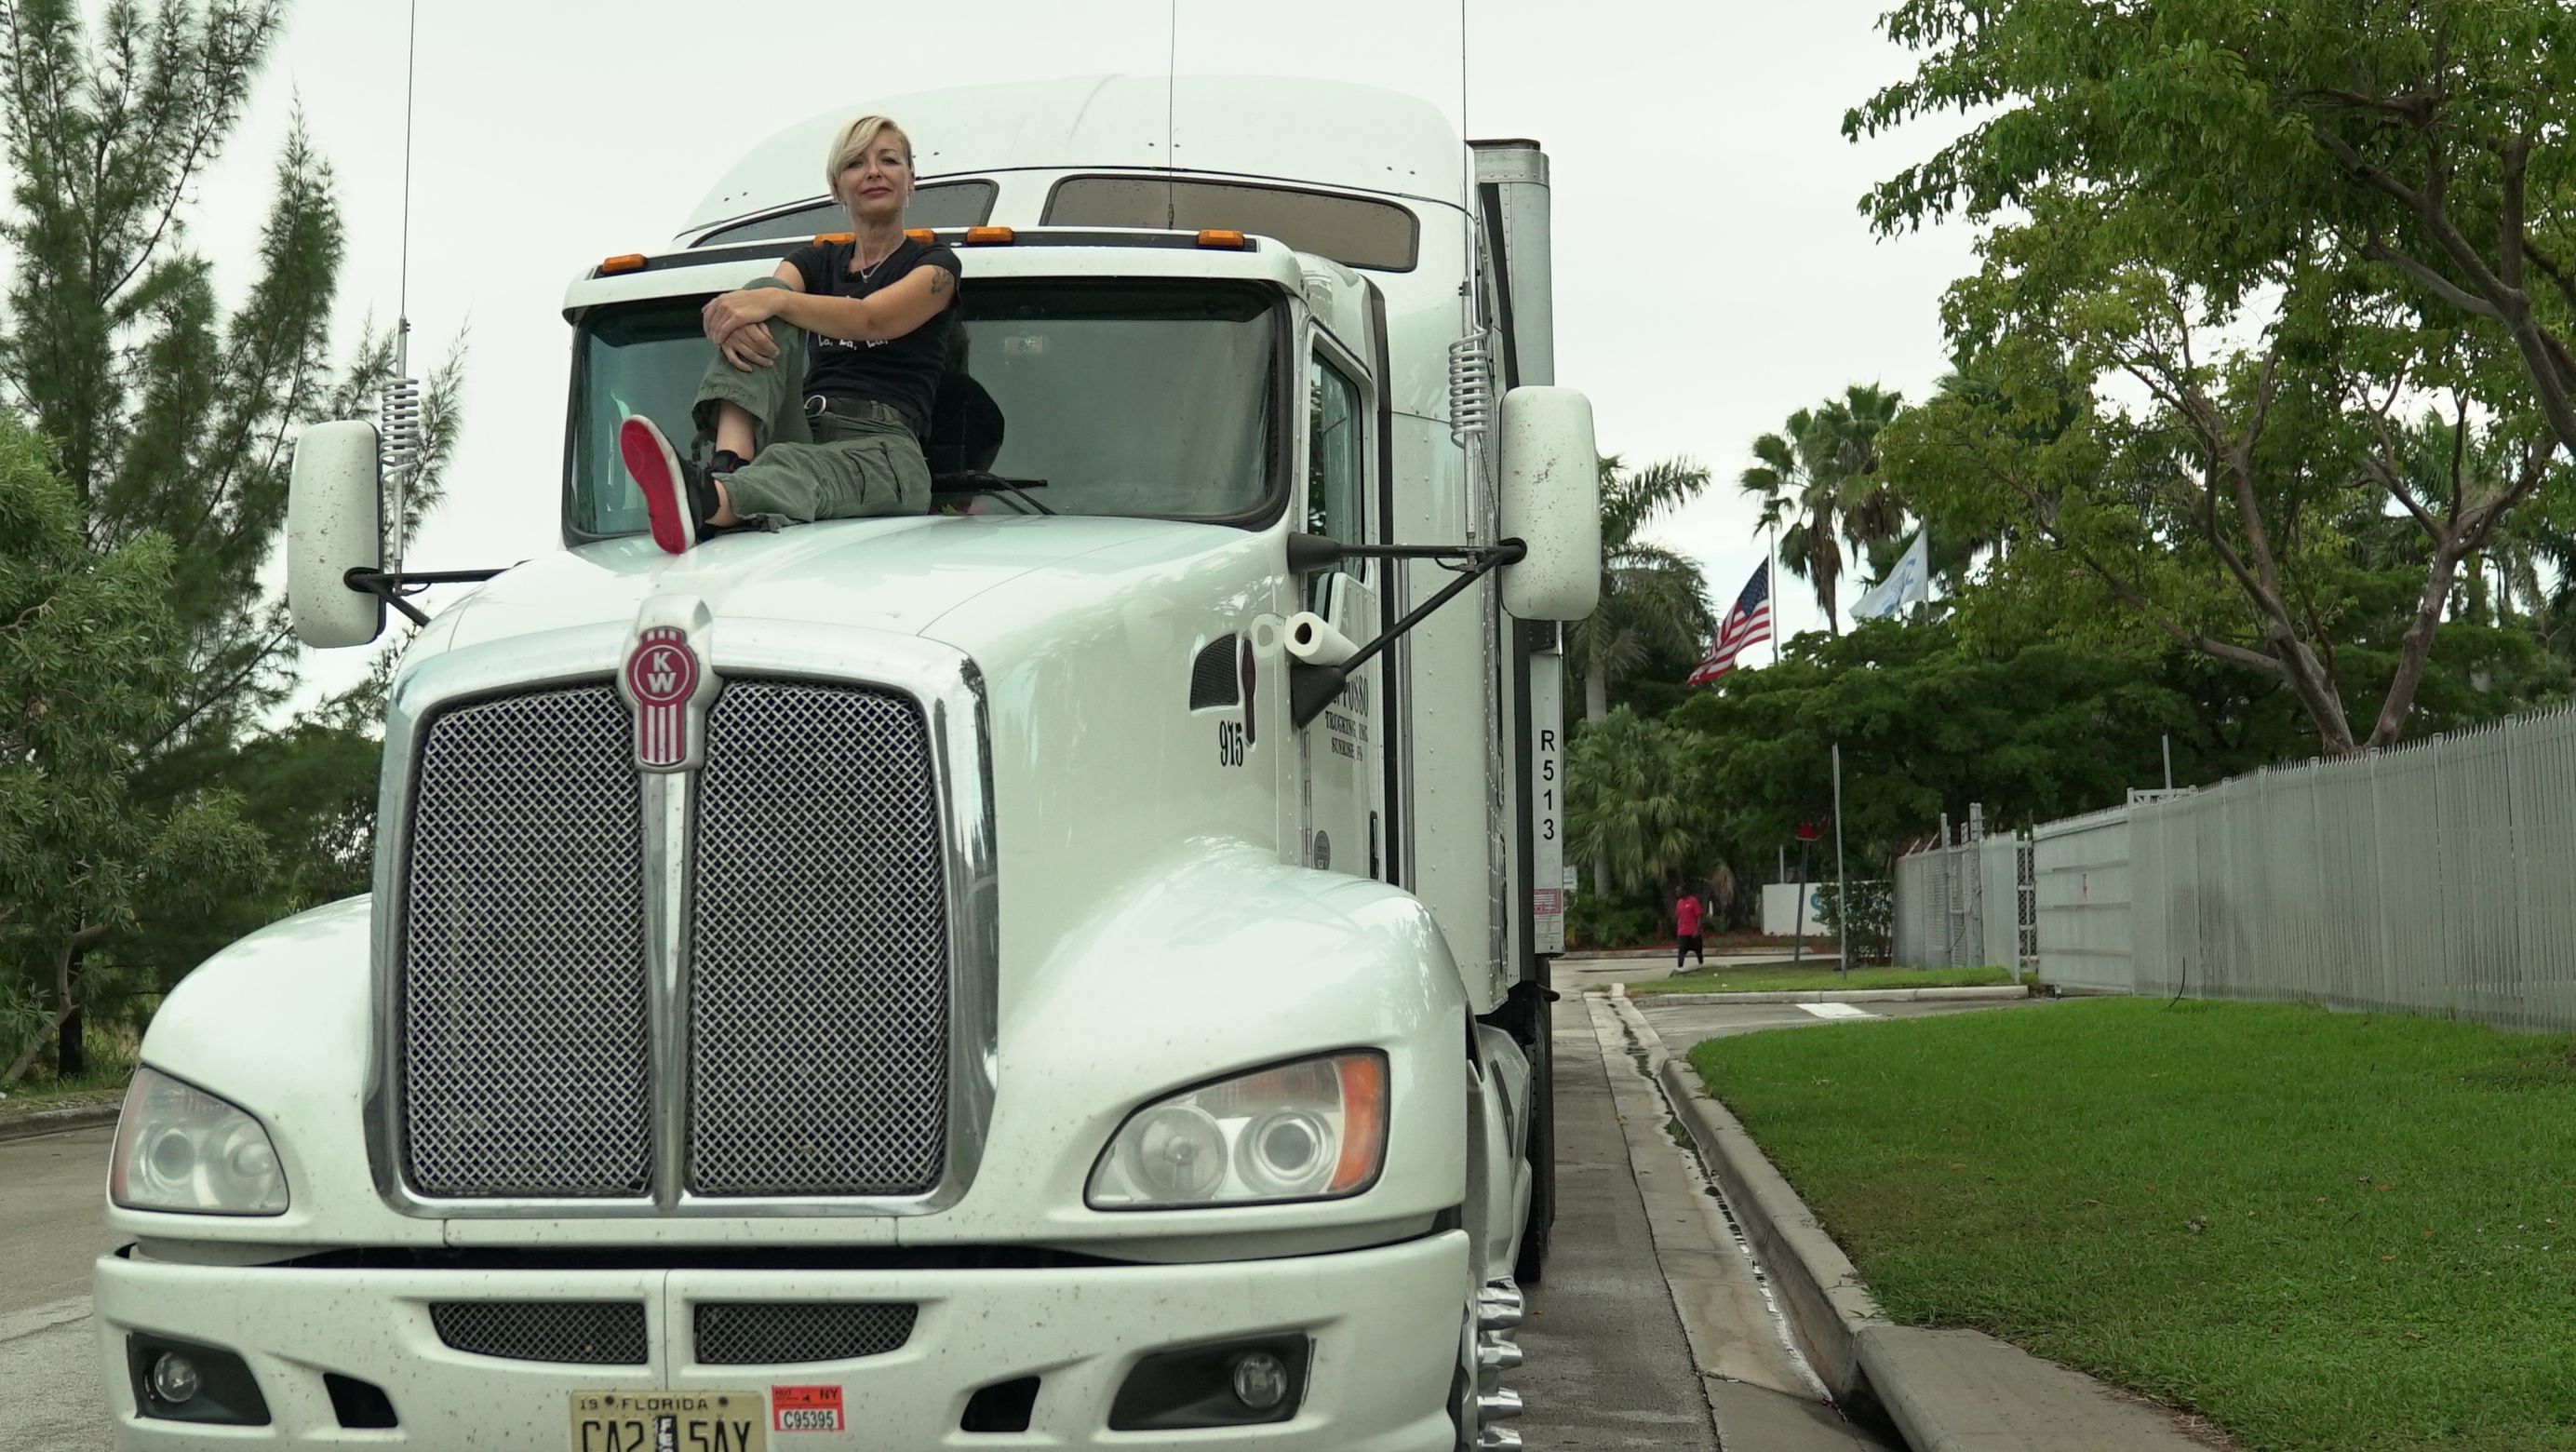 Nicht nur im Truck, sondern auch darauf sitzt "Trucker Babe" Brita gerne.